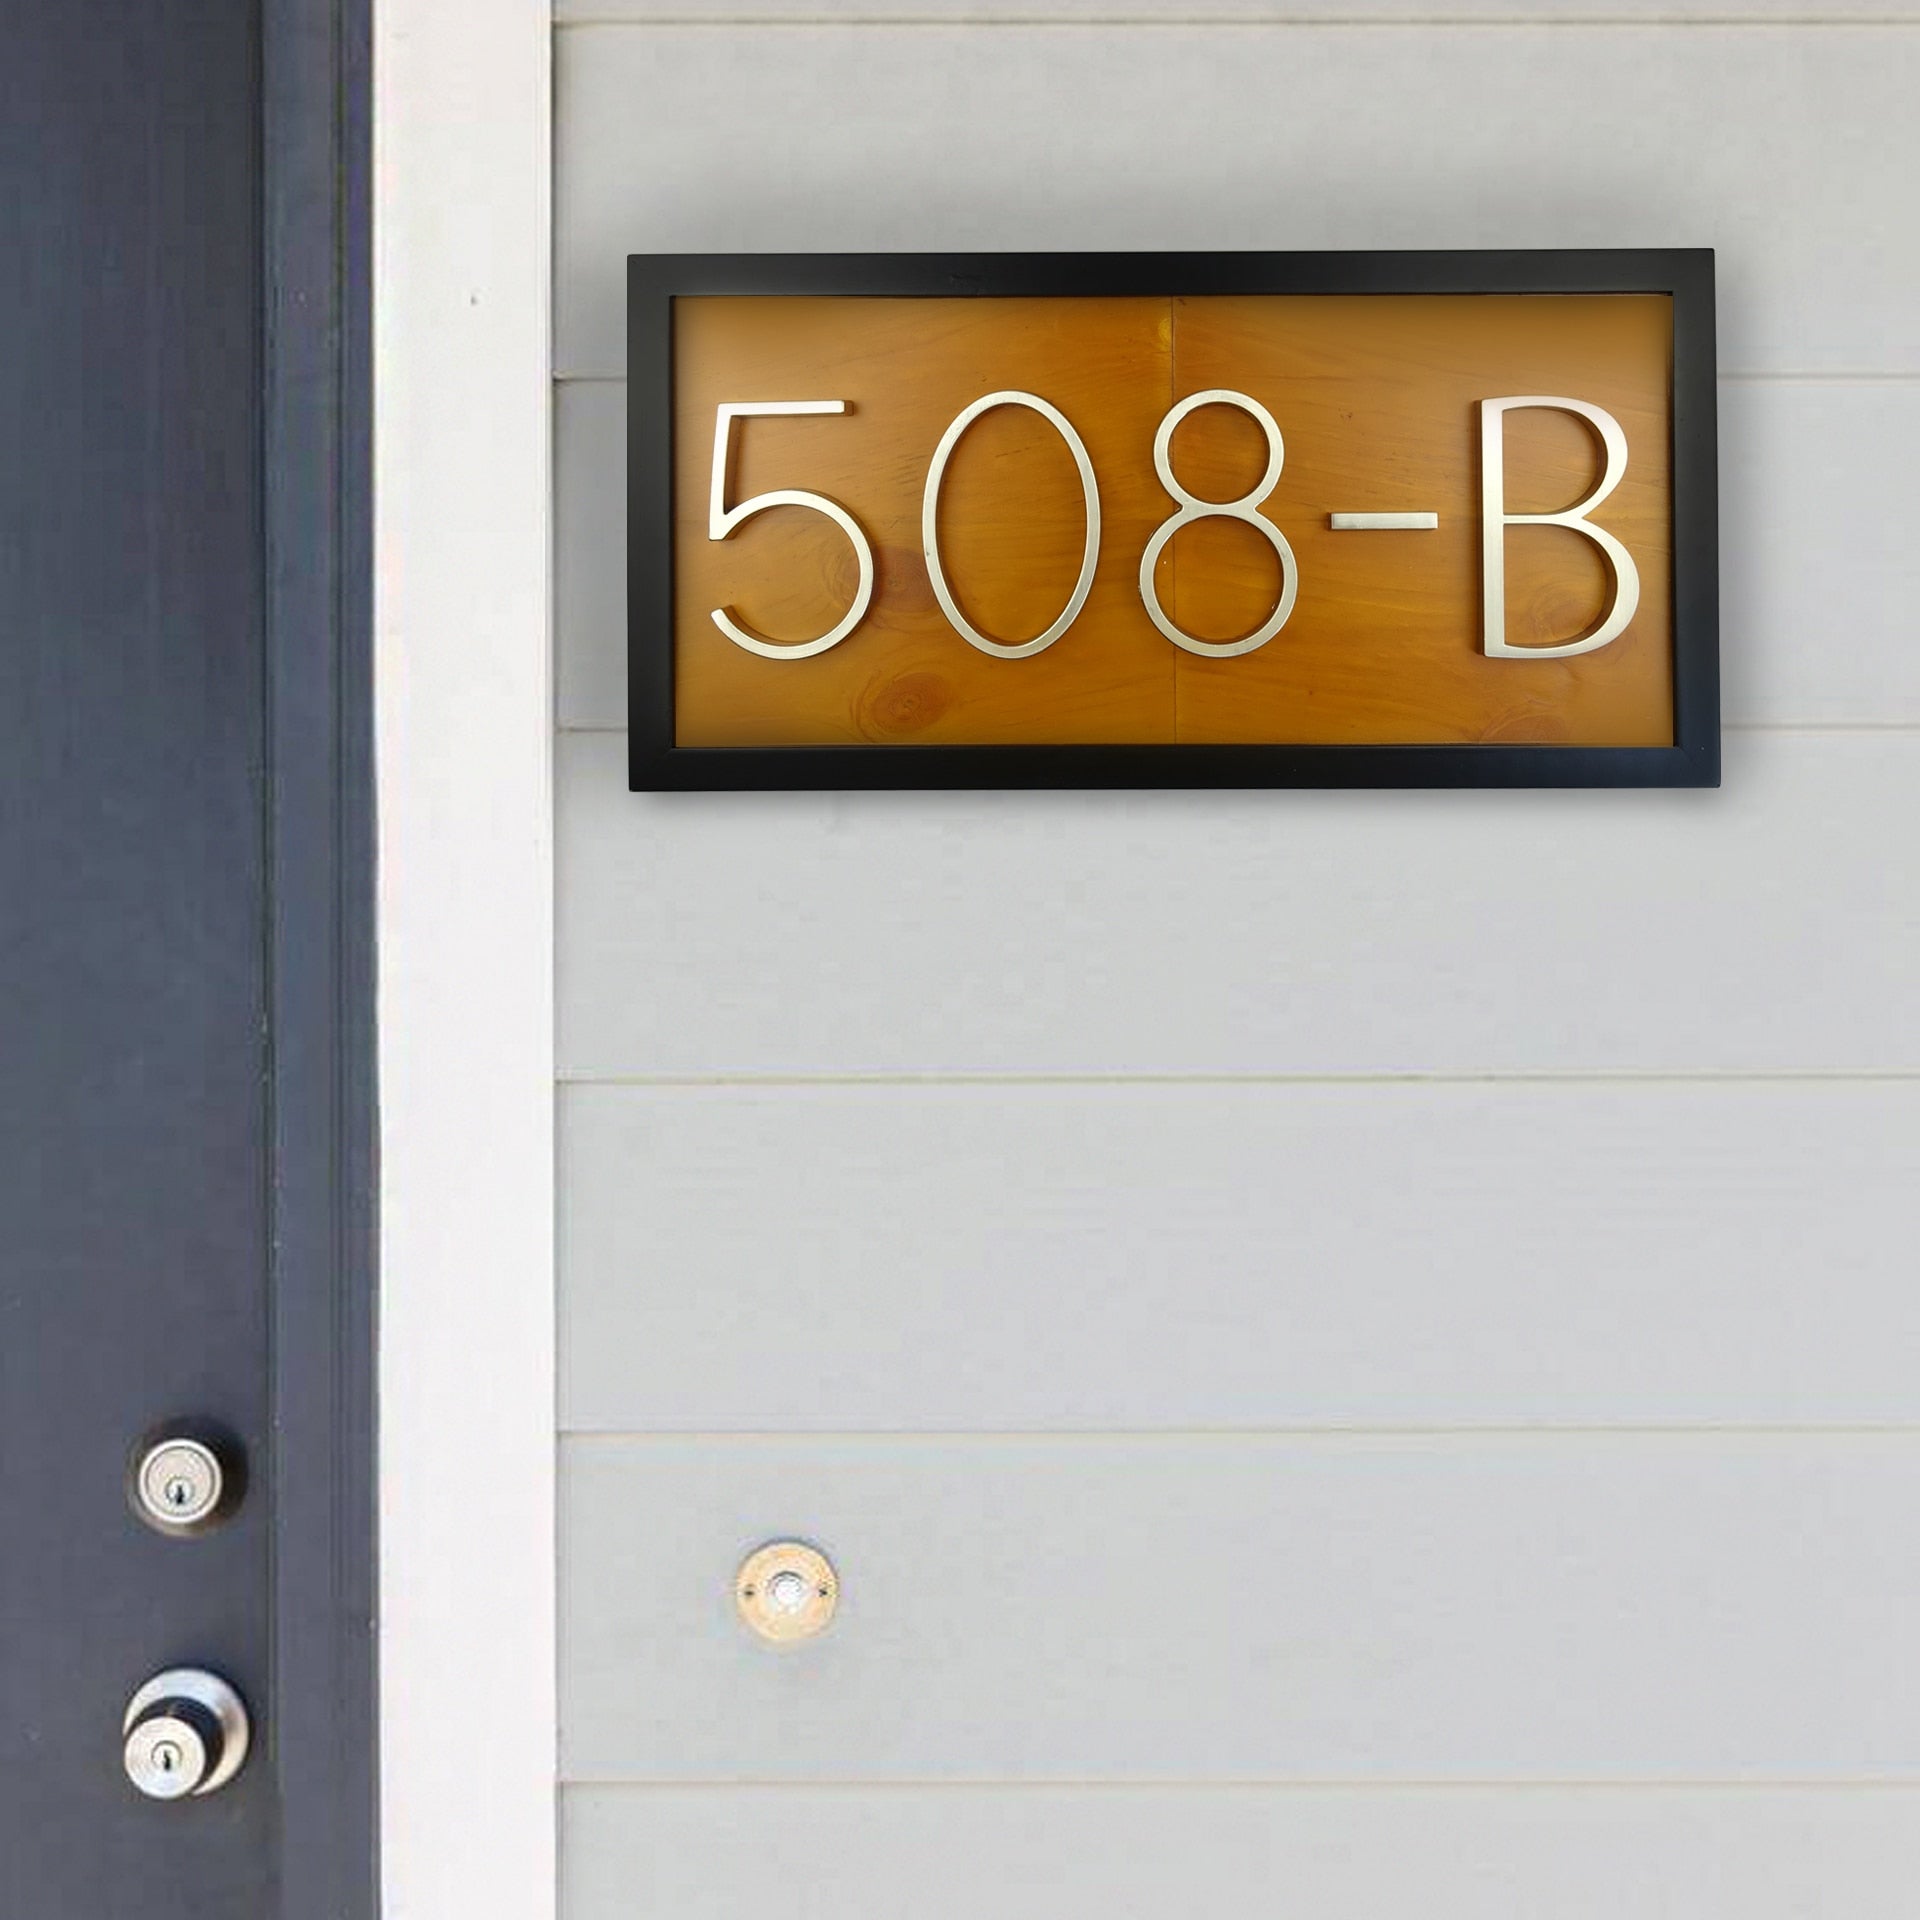 Door Plate House Number Plaque Huisnummer Wooden Board Name Address Sign for House Numbers|Door Plates|